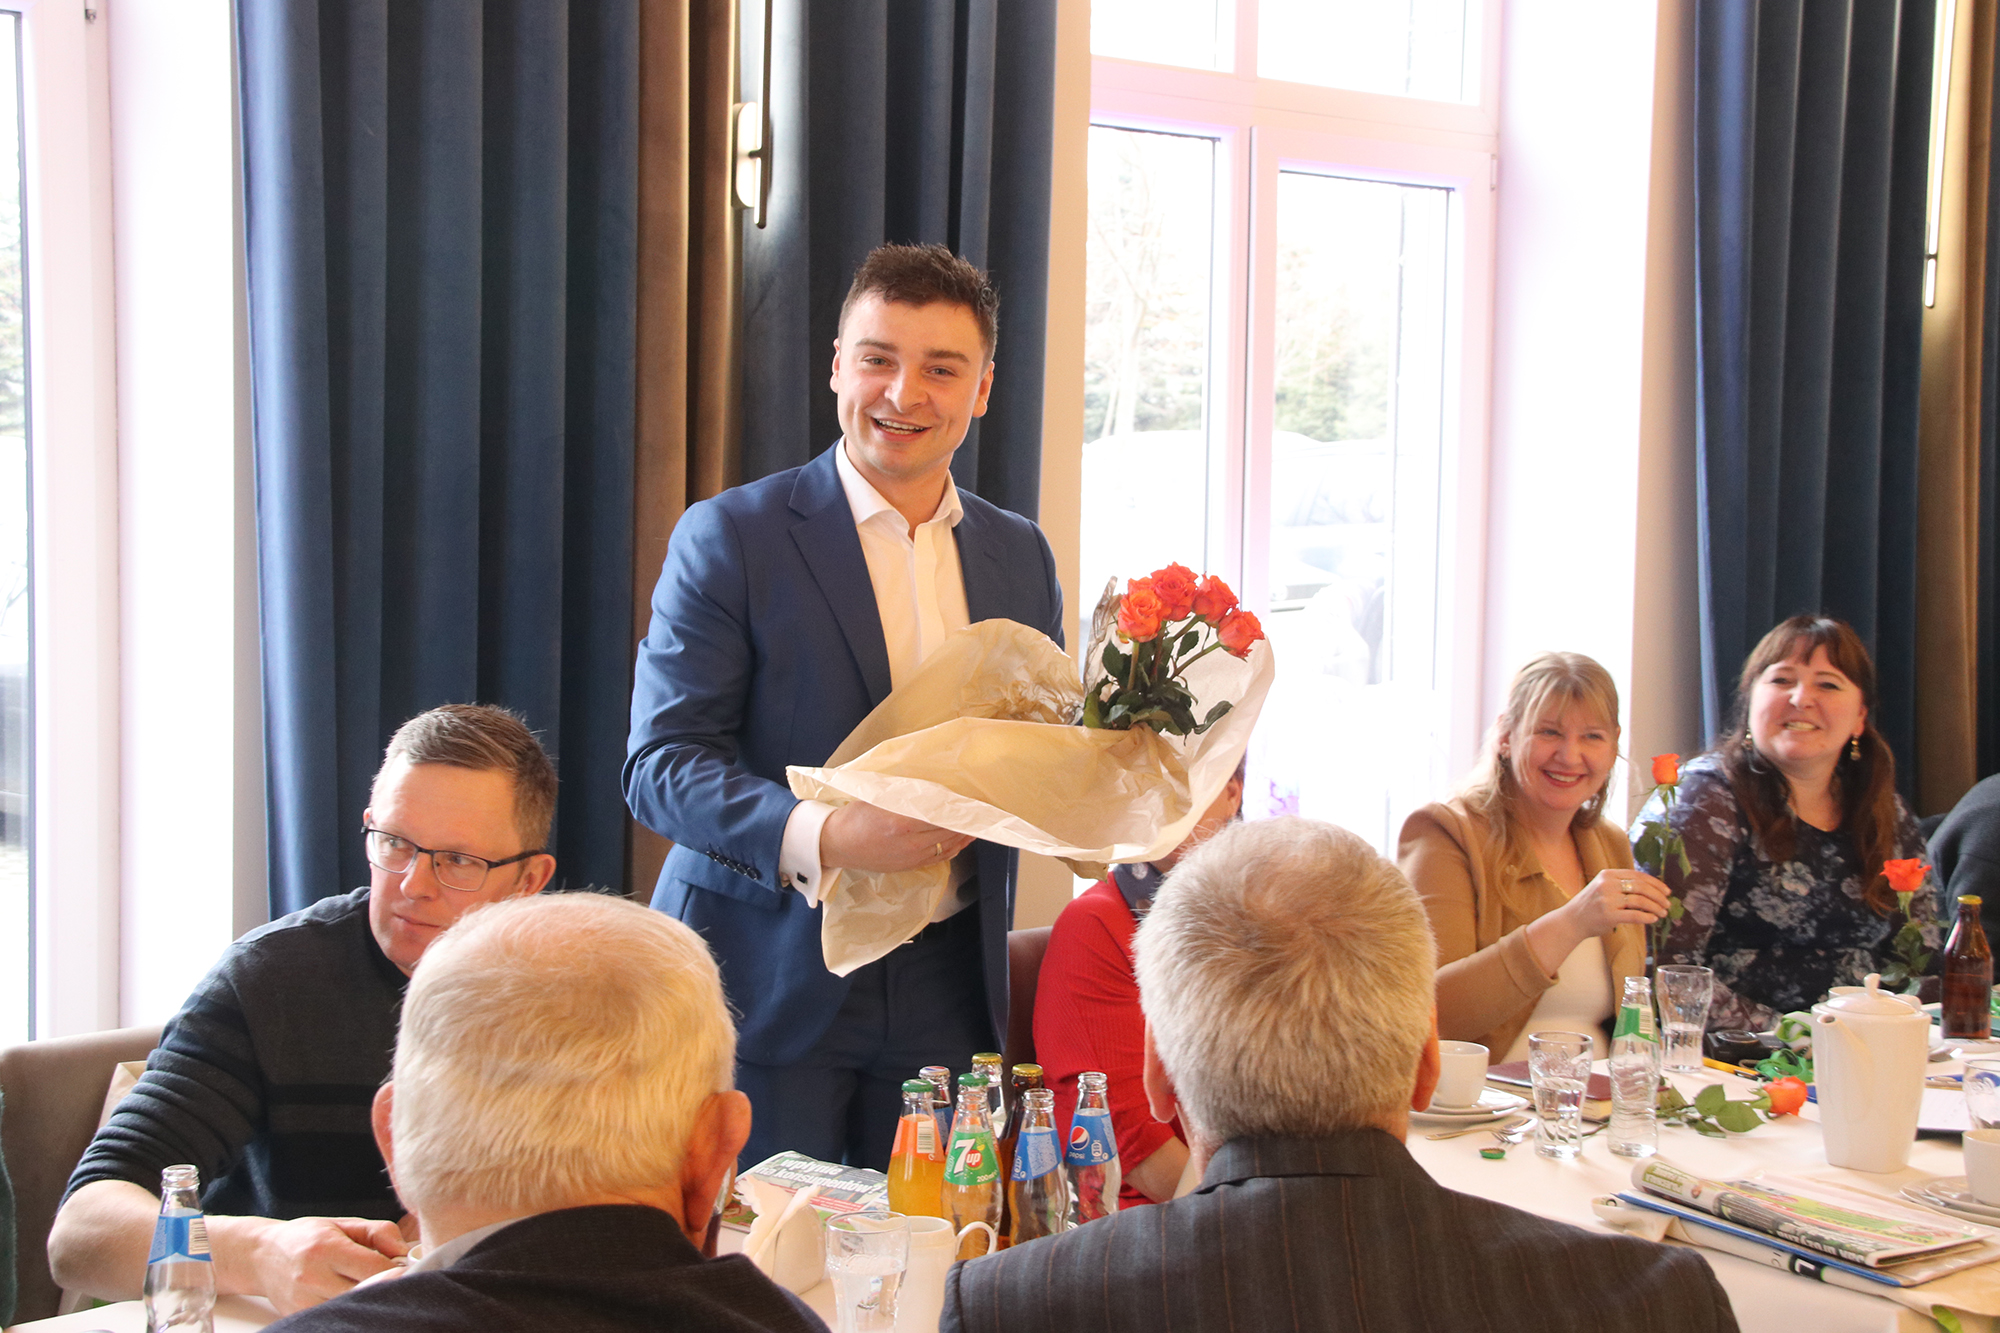 Rolników przywitał Sebastian Jarosz, przewodniczący raciborskiego koła Związku Śląskich Rolników. Jako że spotkanie odbyło się w Dzień Kobiet, paniom podarował kwiatka.